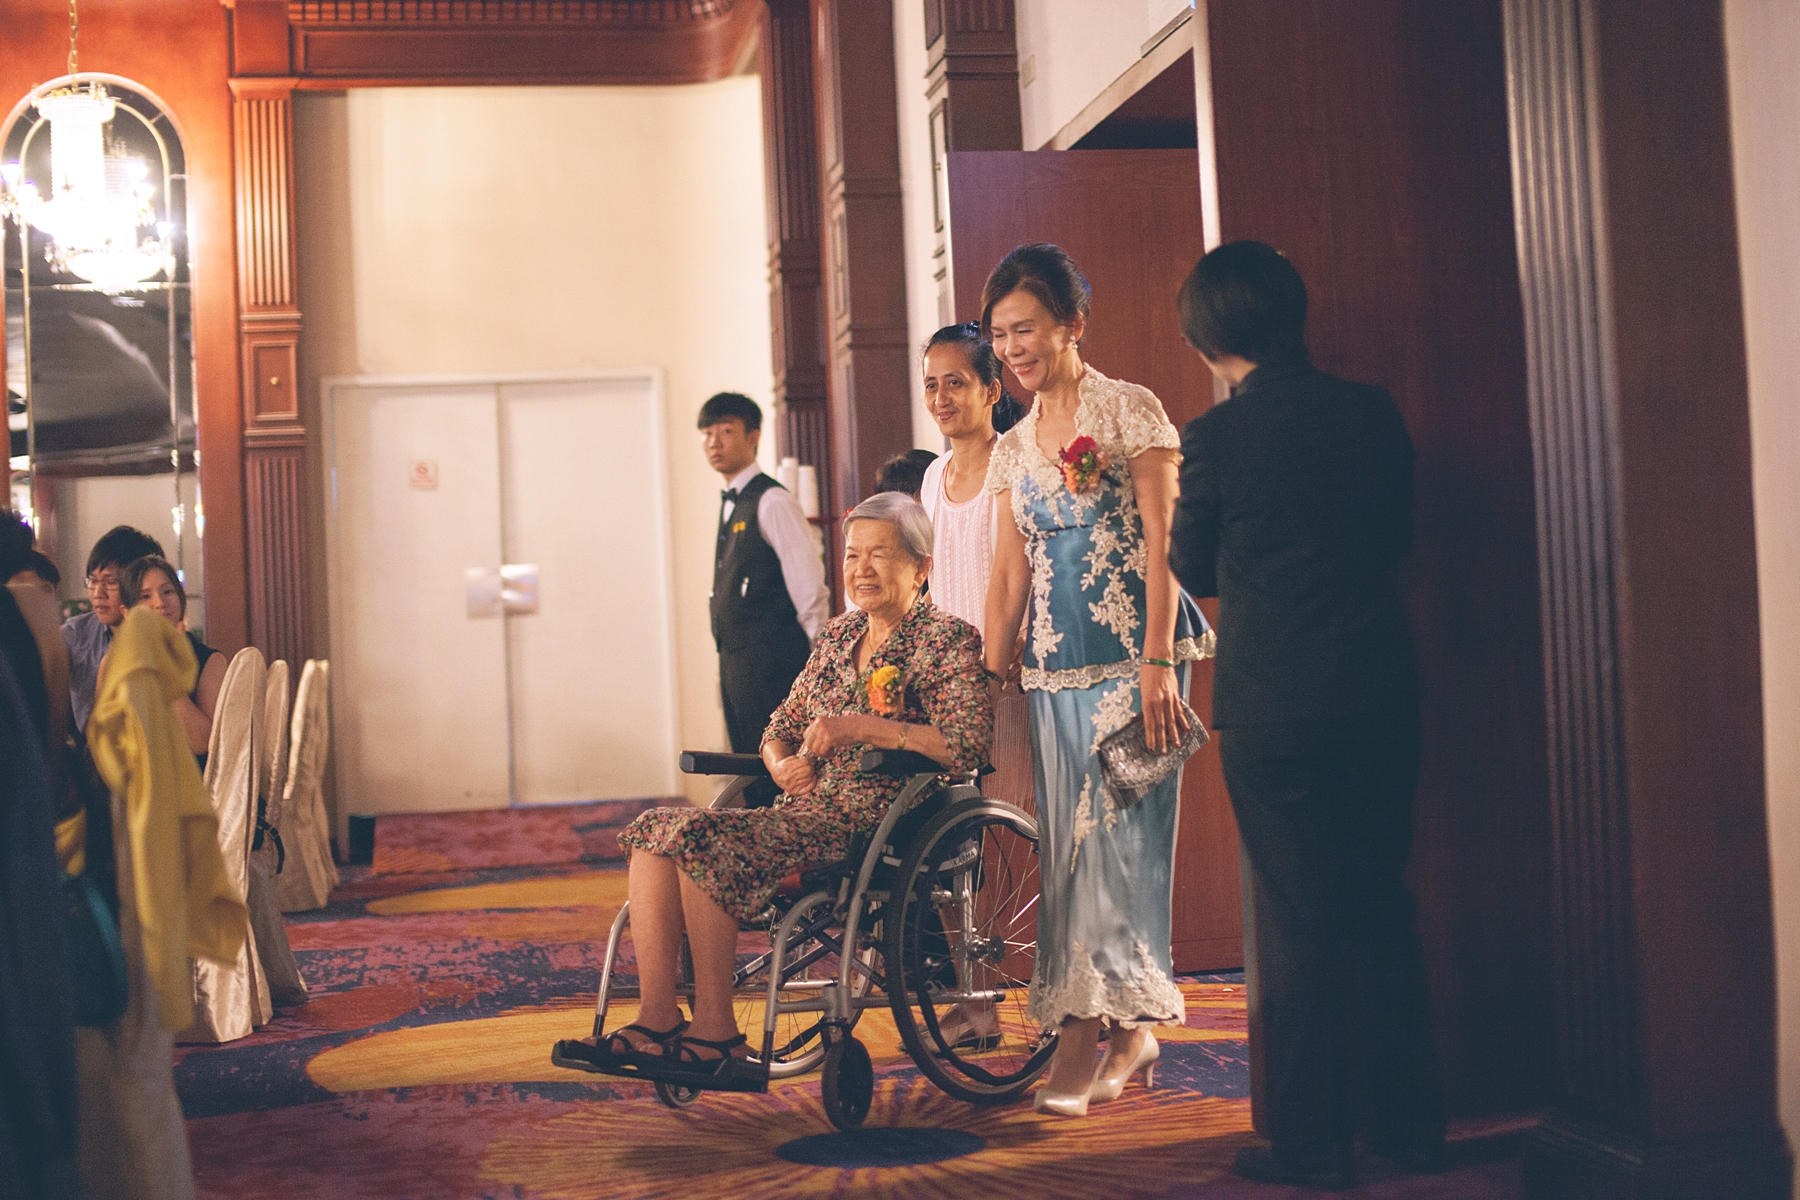 自婚禮攝影,婚攝,婚禮記錄,台北,王朝大酒店,底片風格,自然